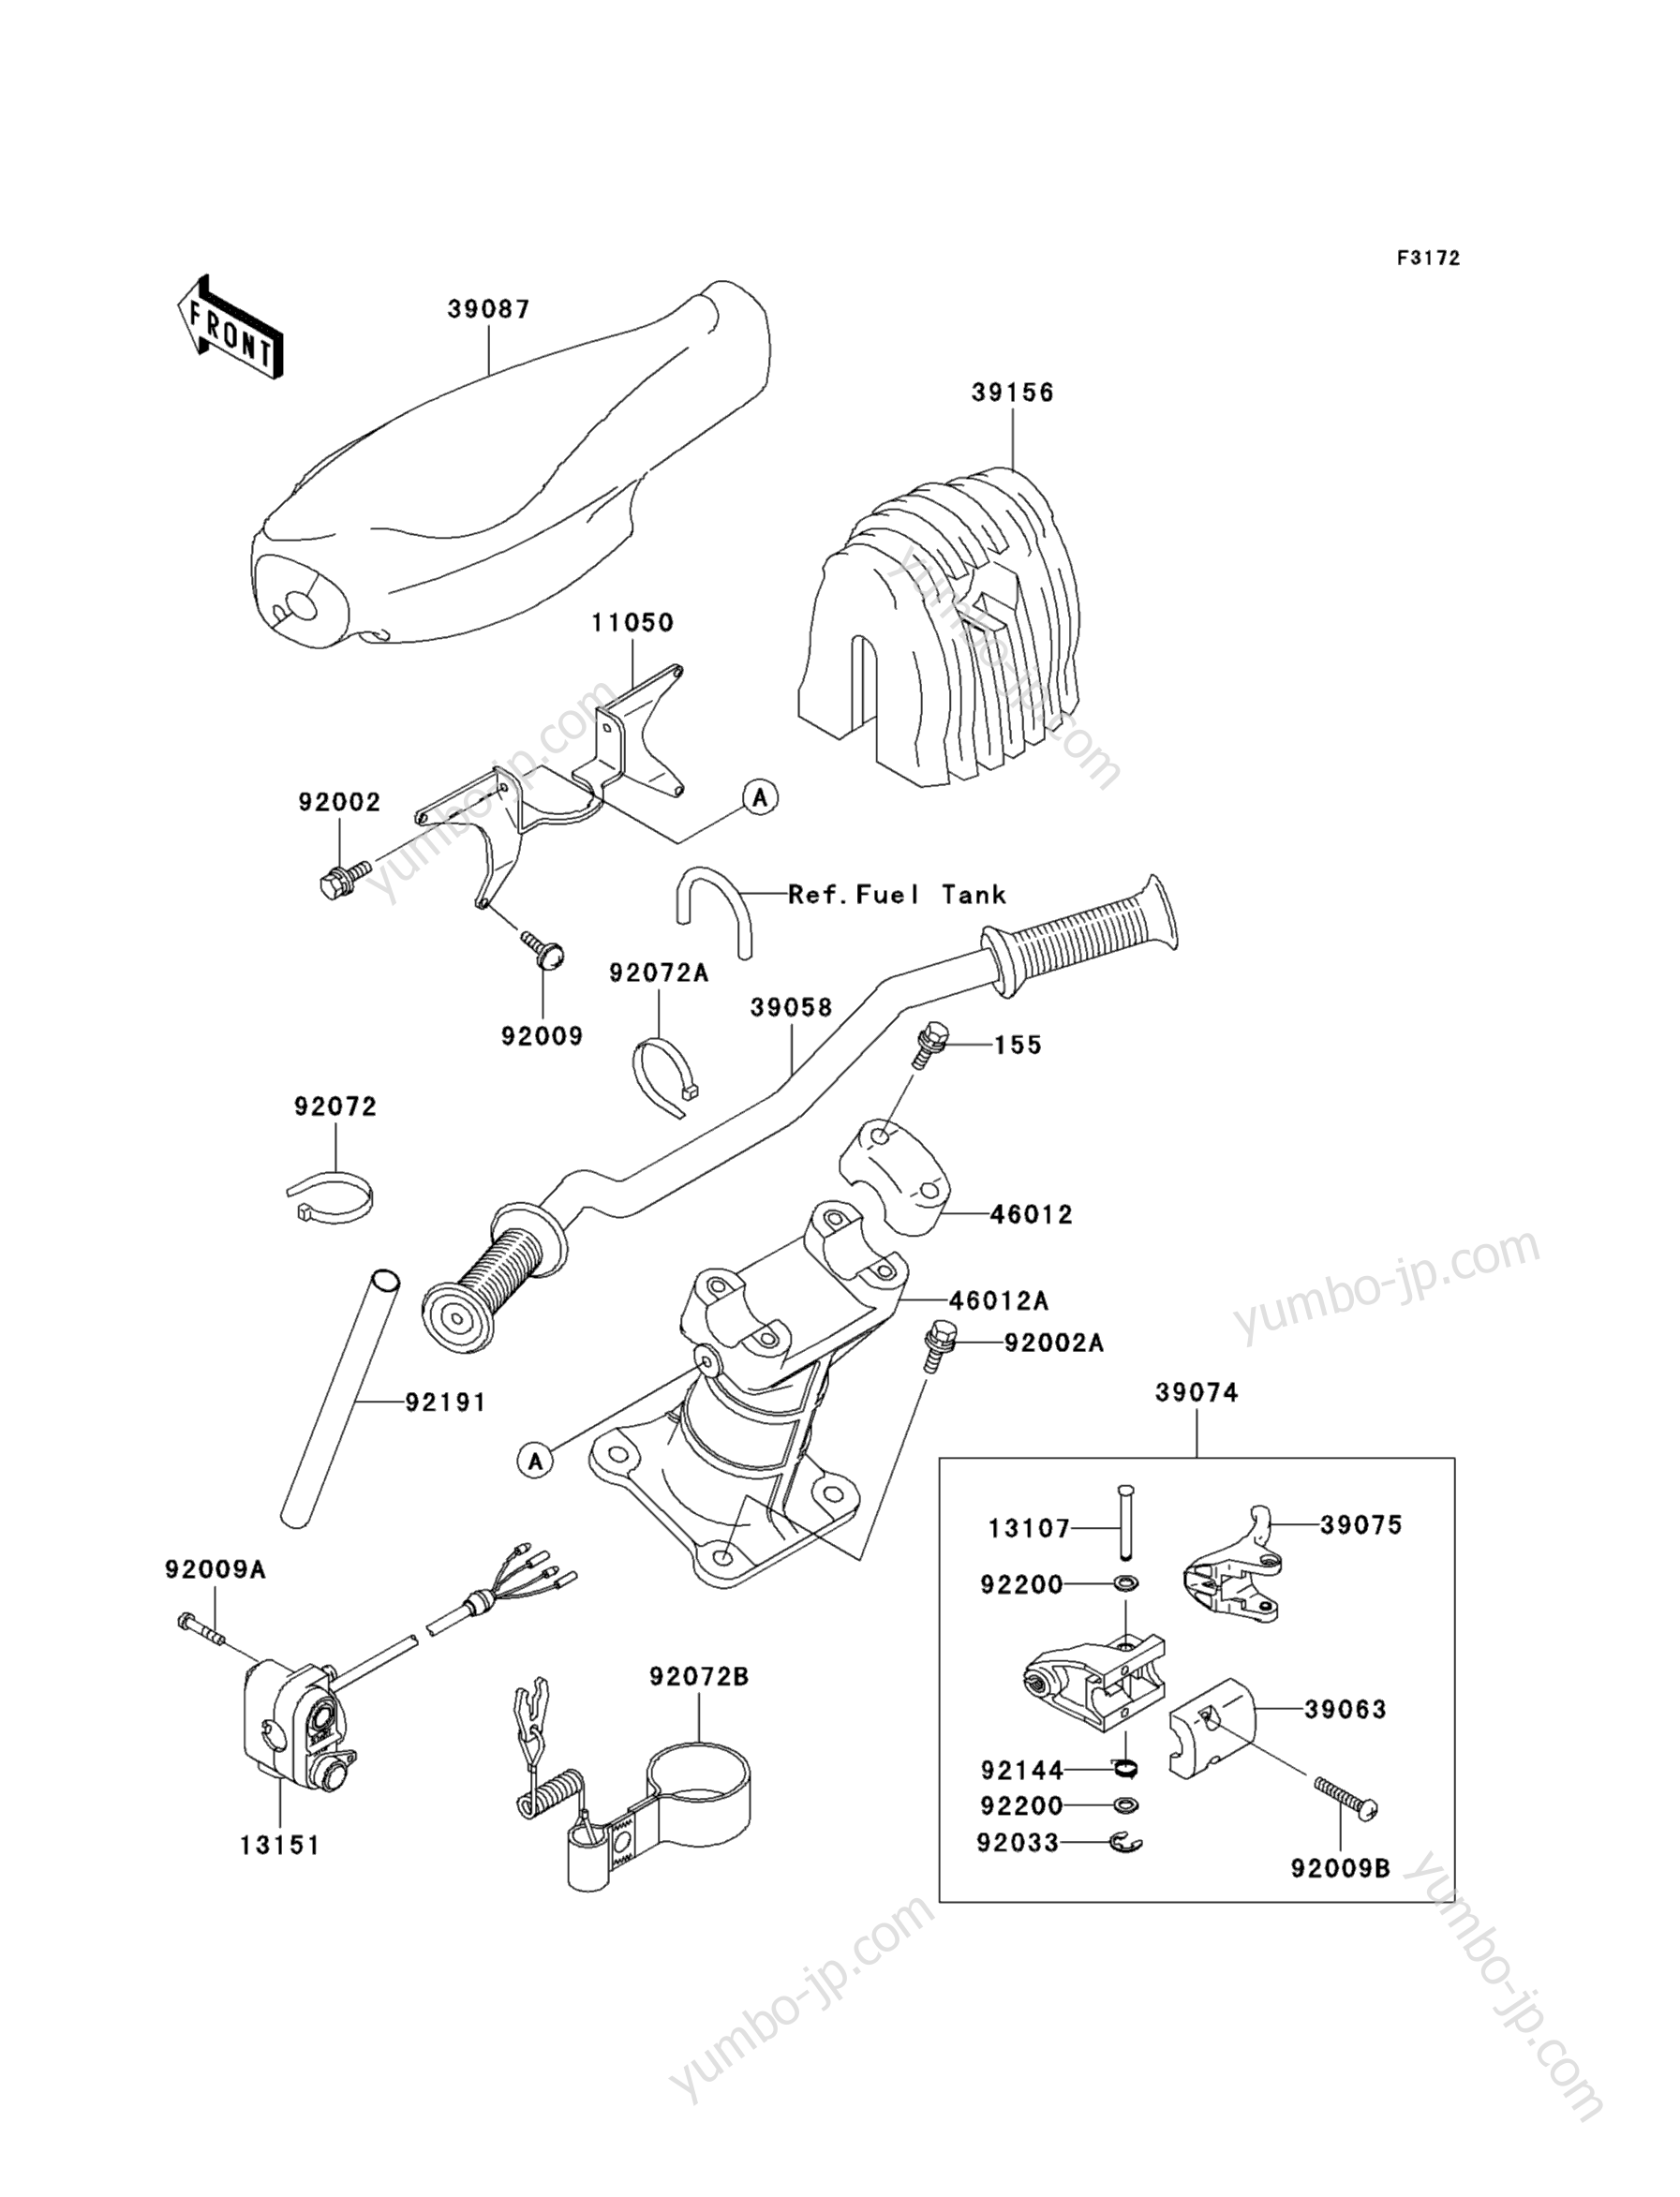 Румпель (рукоятка управления) для гидроциклов KAWASAKI JET SKI 1100 STX D.I. (JT1100-C1) 2000 г.